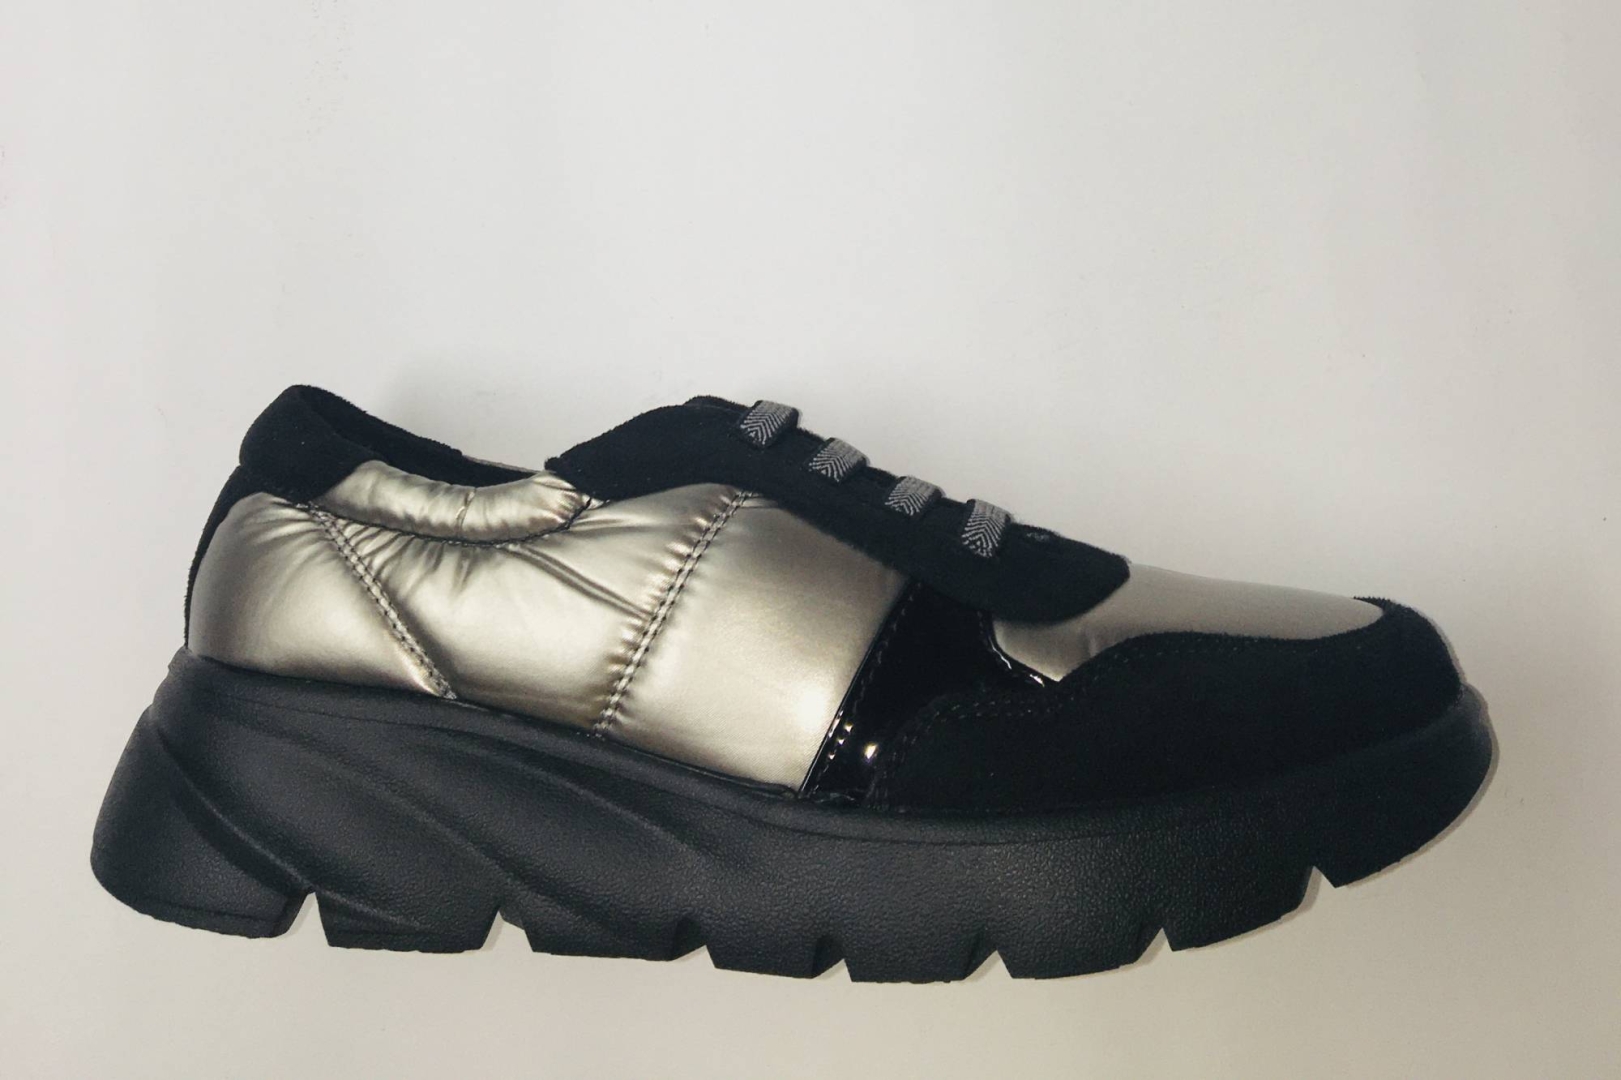 Zapato deportivo casual para mujer en textil negro y champán de CALZAPIES 1423007. M-201